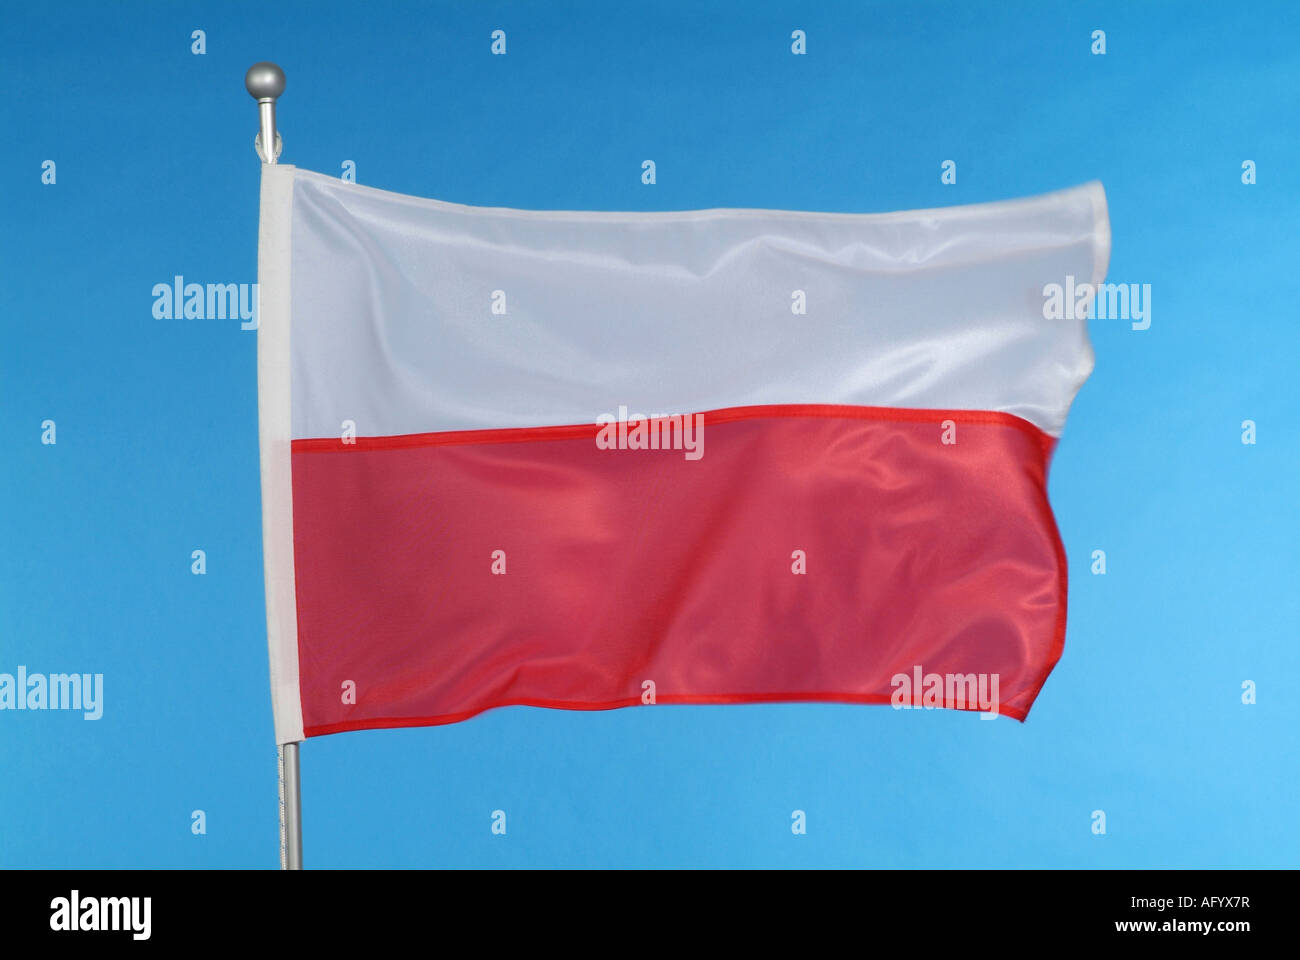 Drapeau national polonais contre le ciel bleu Banque D'Images